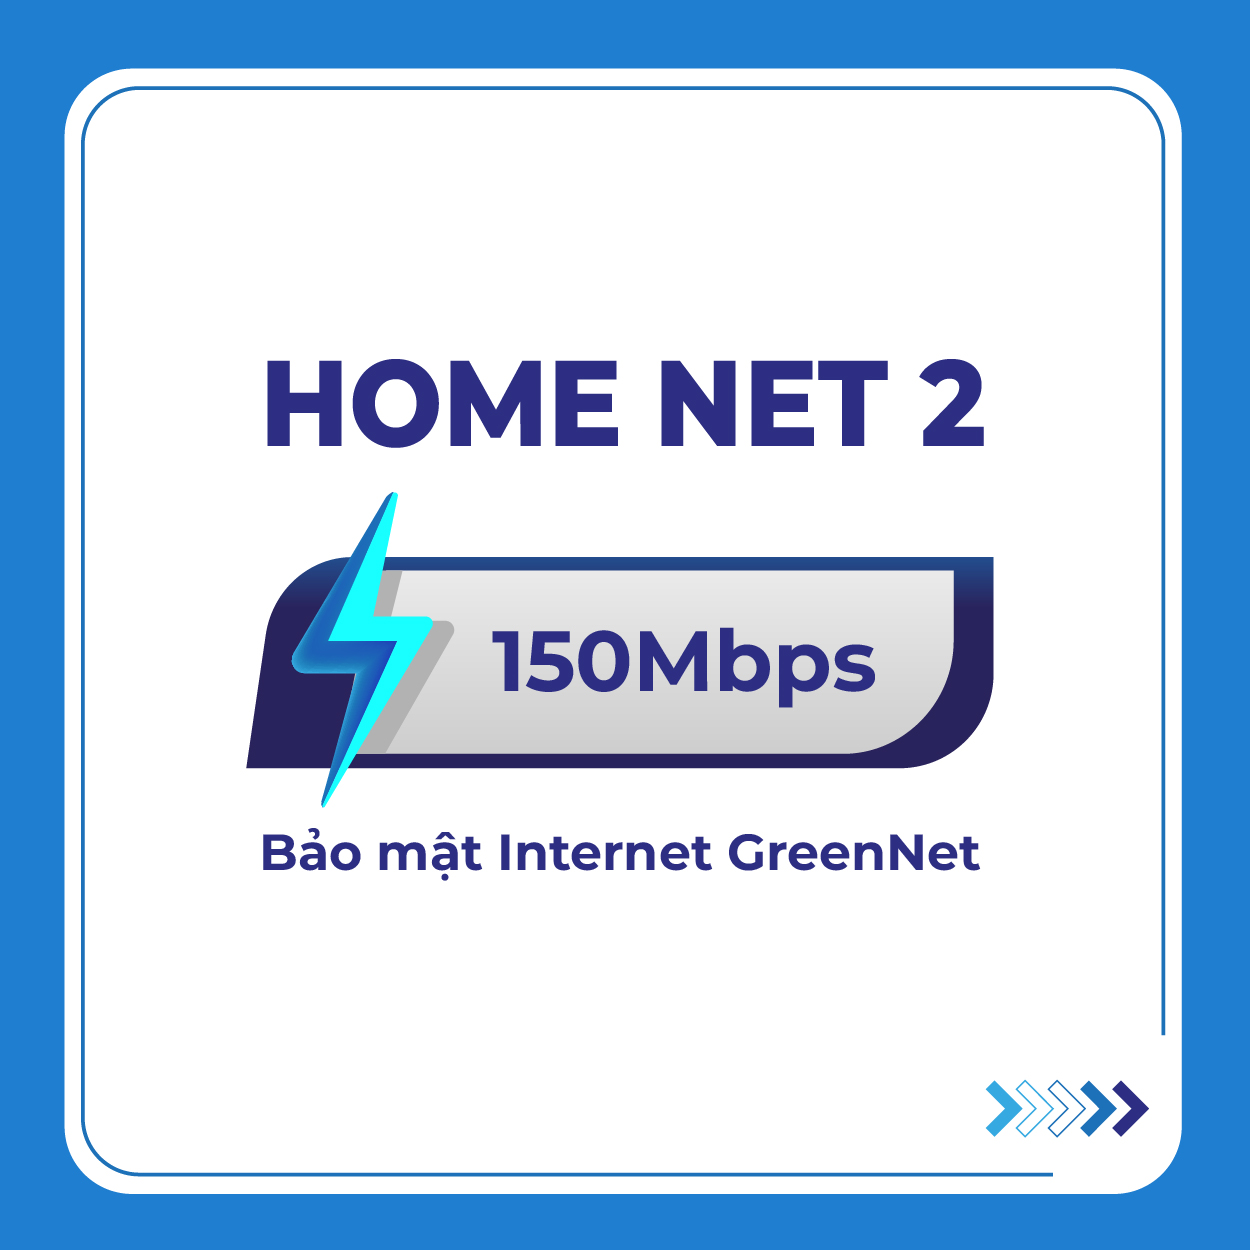 HOME NET 2_NgT